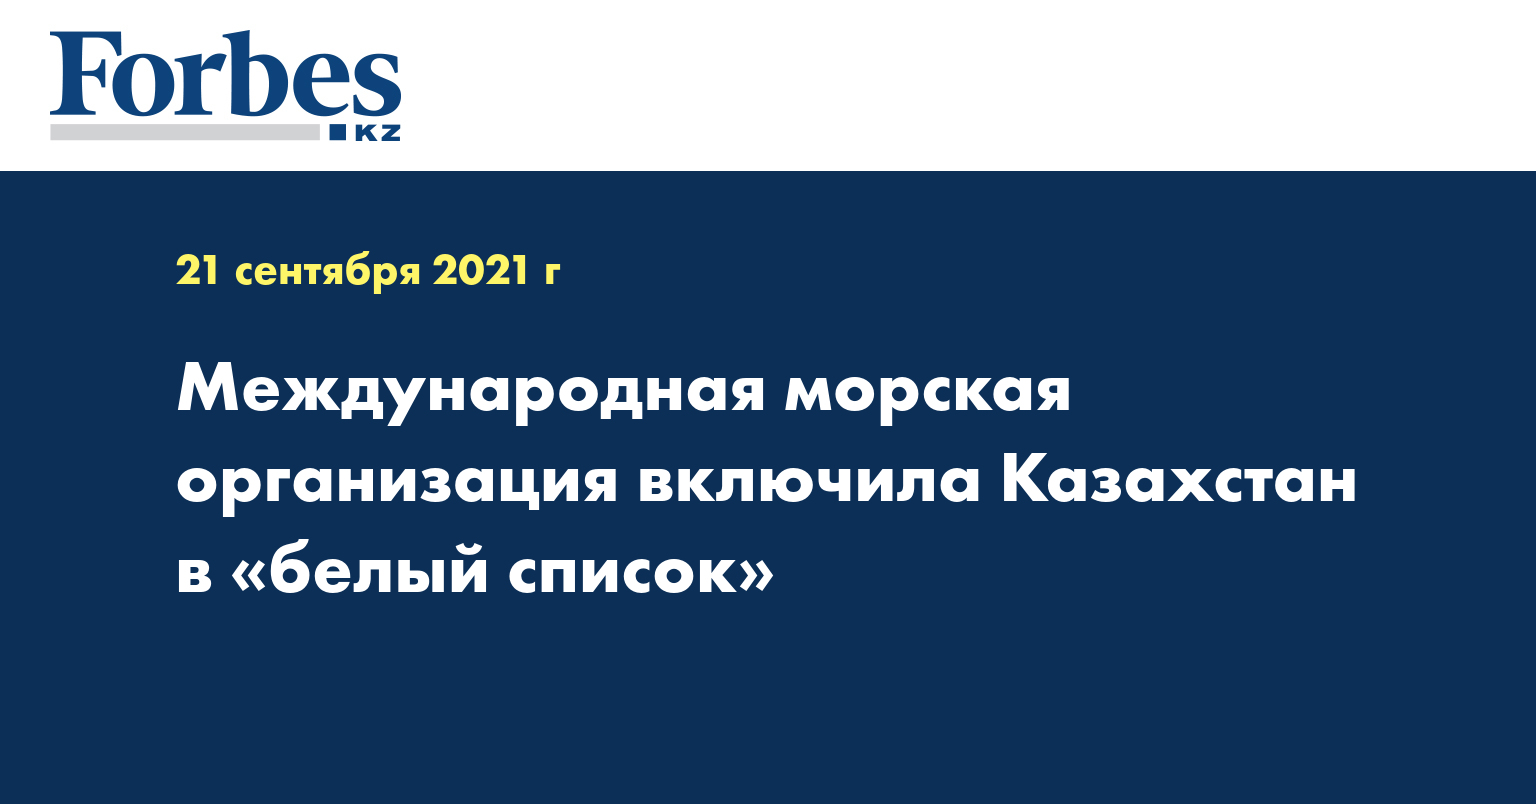 Международная морская организация включила Казахстан в «белый список»